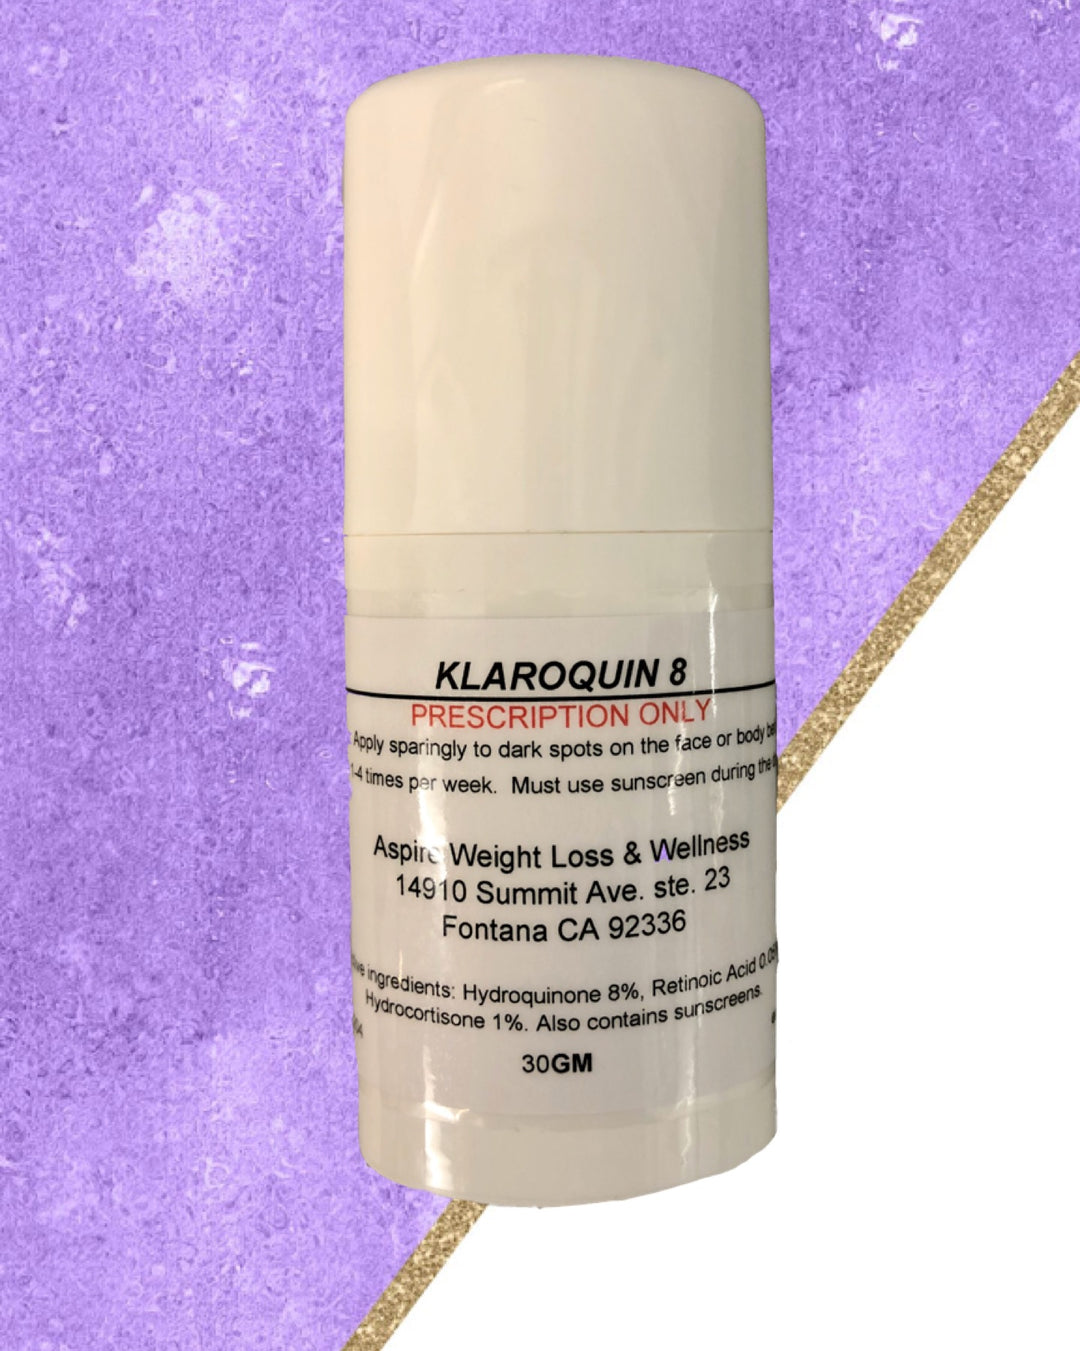 Skin Lightening Gel: Prescription Bleaching Cream (Hydroquinone 8%, Retinoic Acid 0.05%, Hydrocortisone 1%)